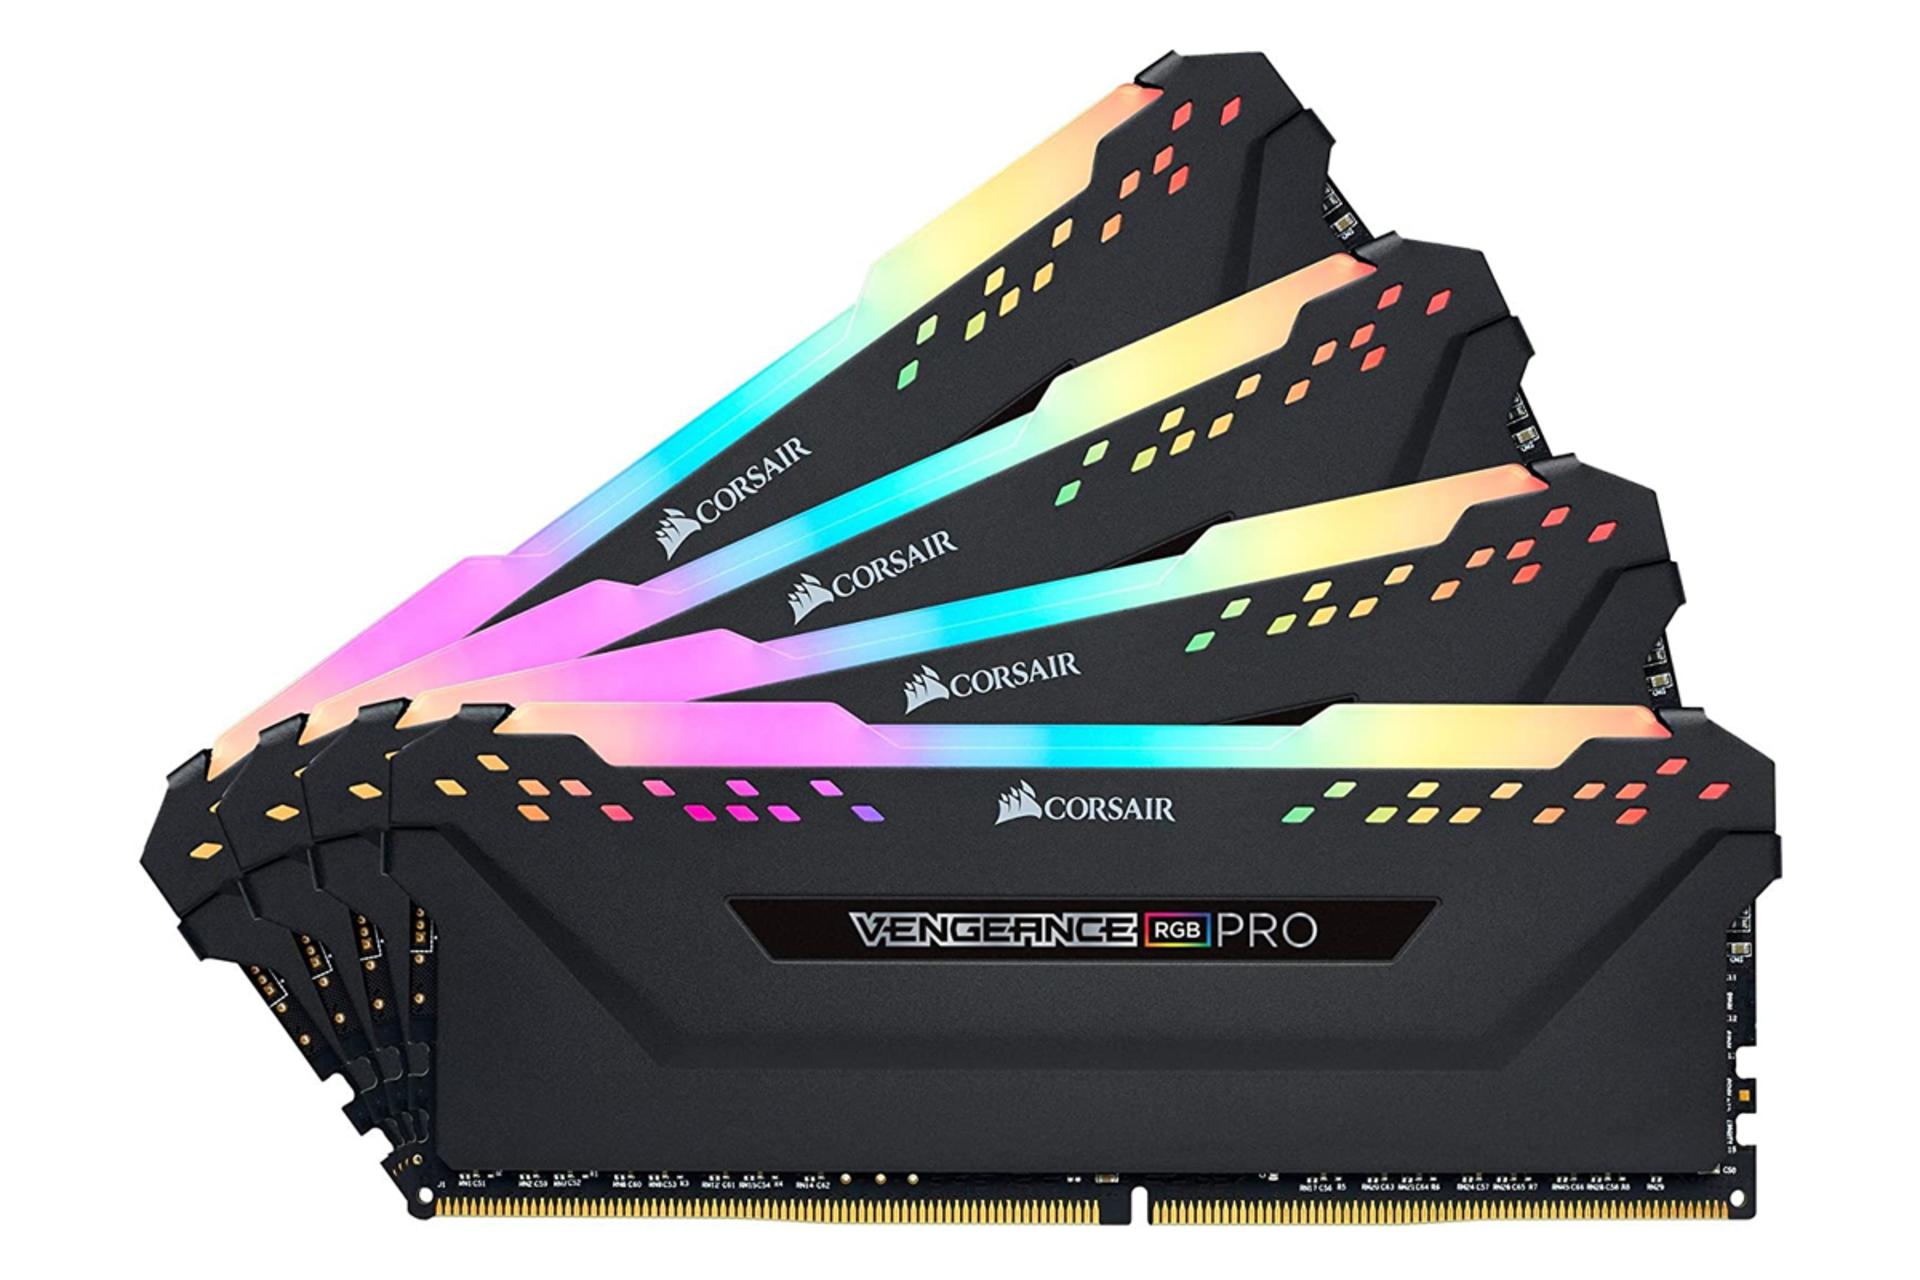 نمای جلو رم کورسیر VENGEANCE RGB PRO ظرفیت 64 گیگابایت (4x16) از نوع DDR4-3600